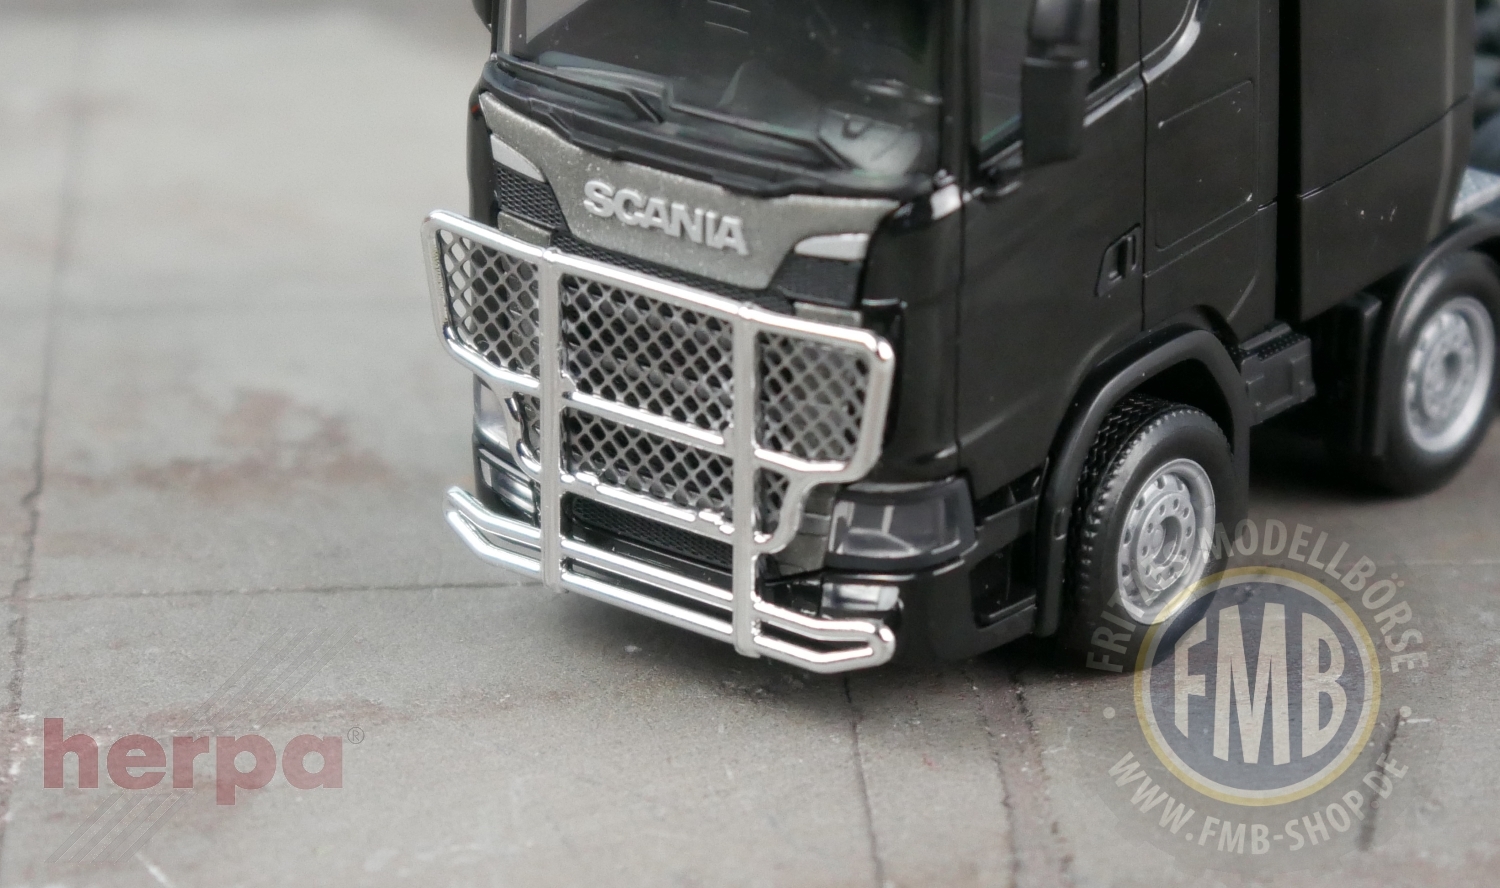 054003 - Herpa Zubehör - Trux Rammschutz für Scania CS/CR (mit Fotoätzteil)  - 1 Stück